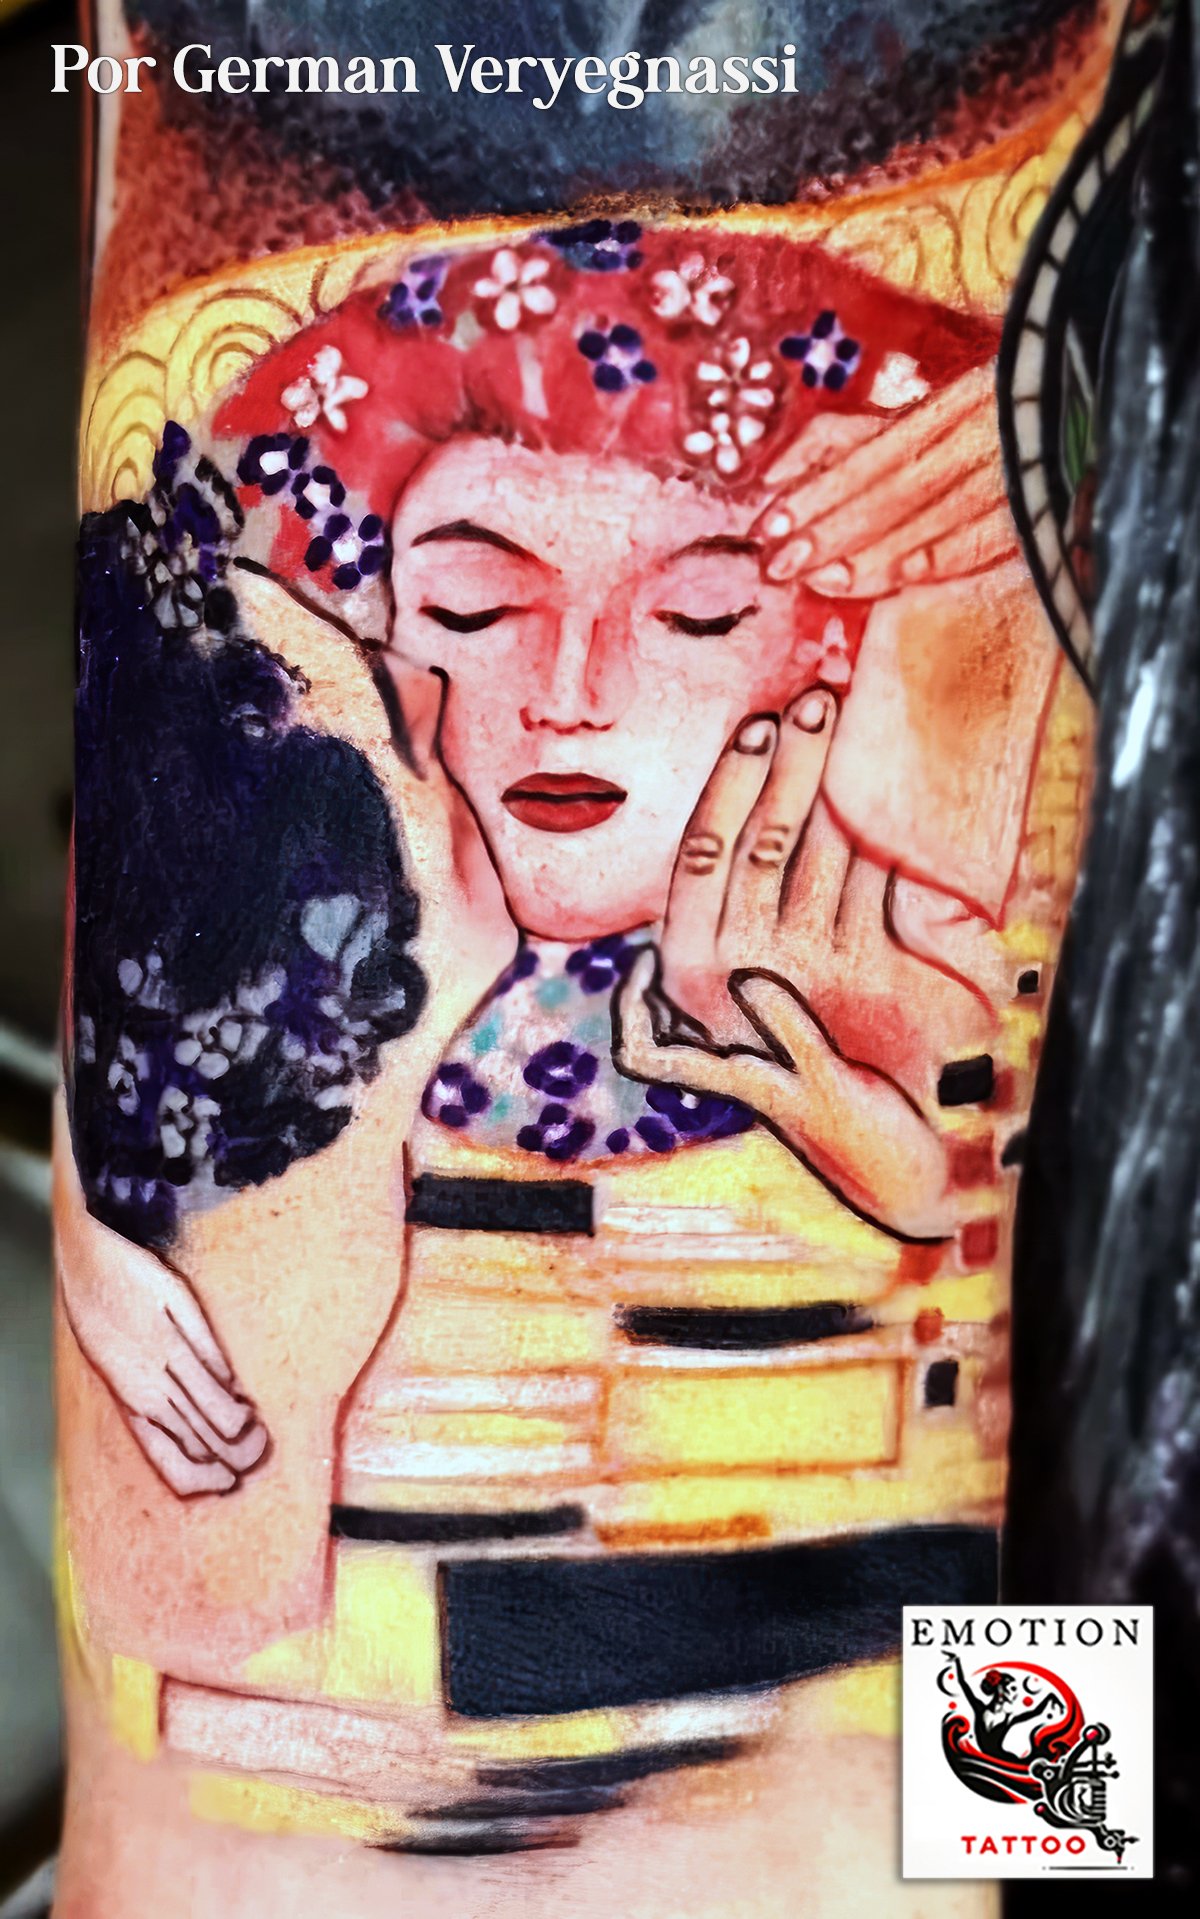 Este tatuaje, una interpretación de la icónica obra de Gustav Klimt, es una fusión de arte y emoción plasmada por Germán Veryegnassi. La imagen captura la esencia del estilo distintivo de Klimt, con su uso de colores vibrantes y texturas ornamentadas. El rostro en reposo, adornado con flores y rodeado por un halo de tonos dorados y patrones intrincados, evoca la belleza y la tranquilidad. Este tatuaje es un tributo al arte modernista y un reflejo del profundo respeto de Germán por la historia del arte, ofreciendo una pieza que no solo es visualmente deslumbrante, sino que también porta un significado más profundo y una conexión con la rica tradición artística.